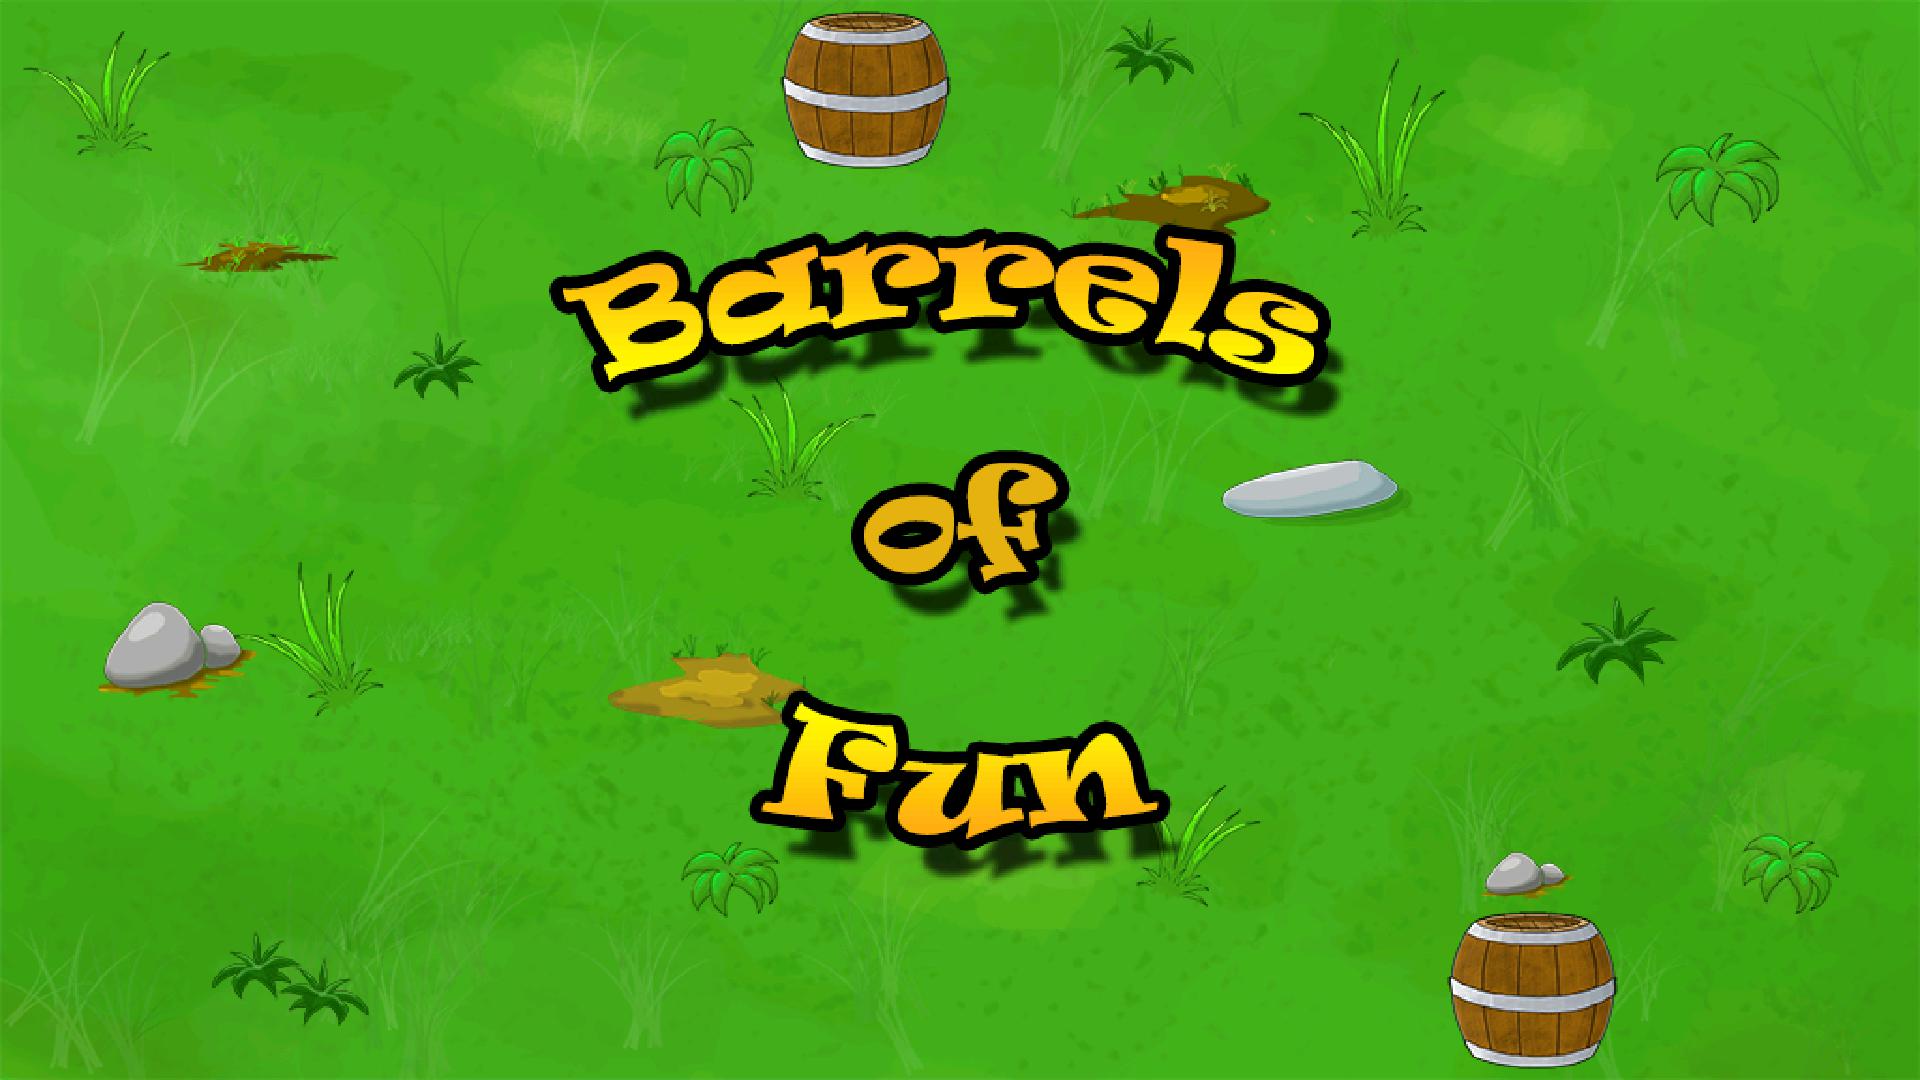 Barrels of Fun